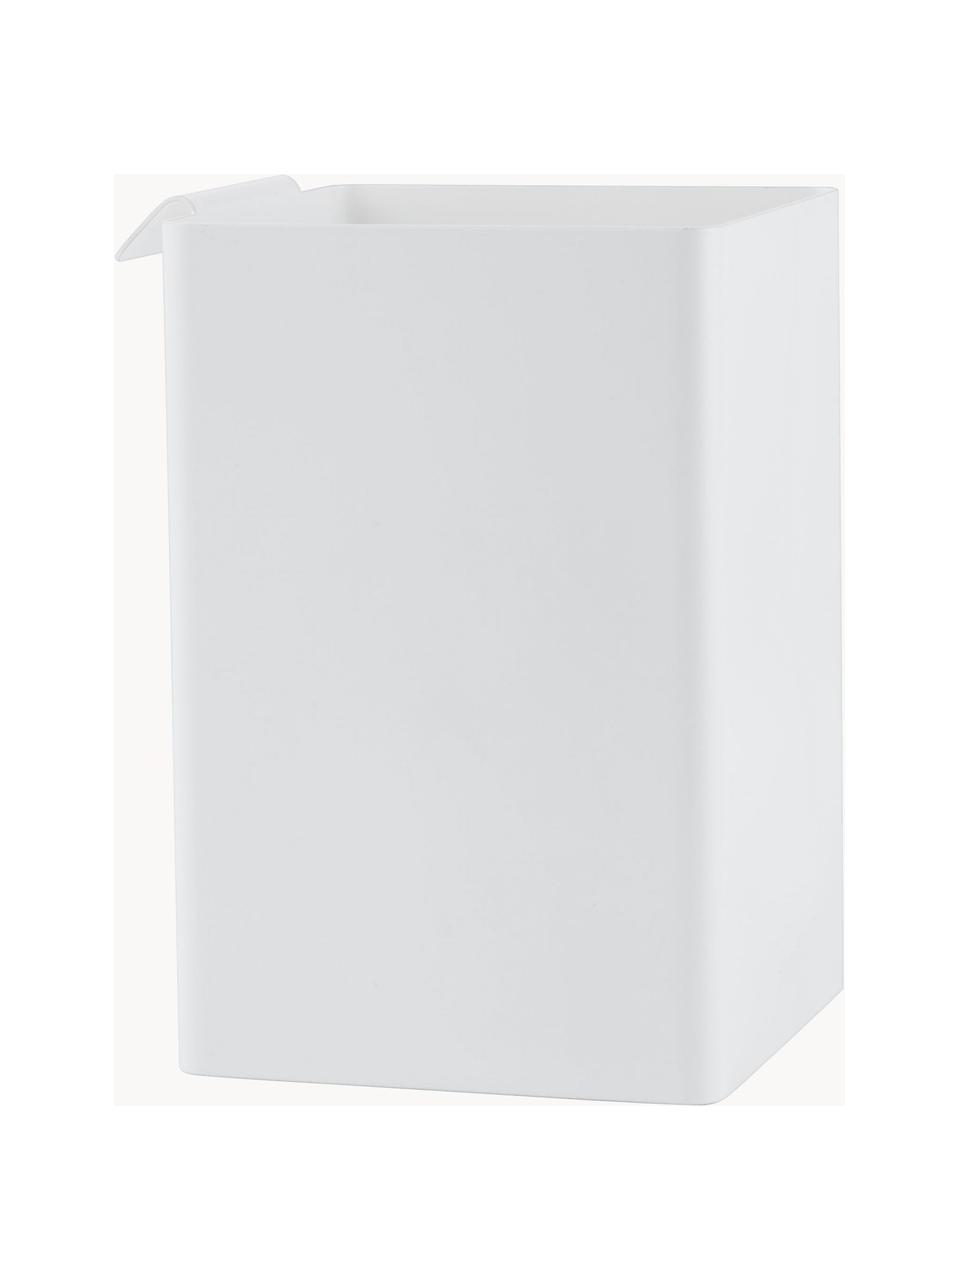 Stahl-Küchenaufbewahrungsbox Flex, Stahl, beschichtet, Weiss, B 11 x H 16 cm